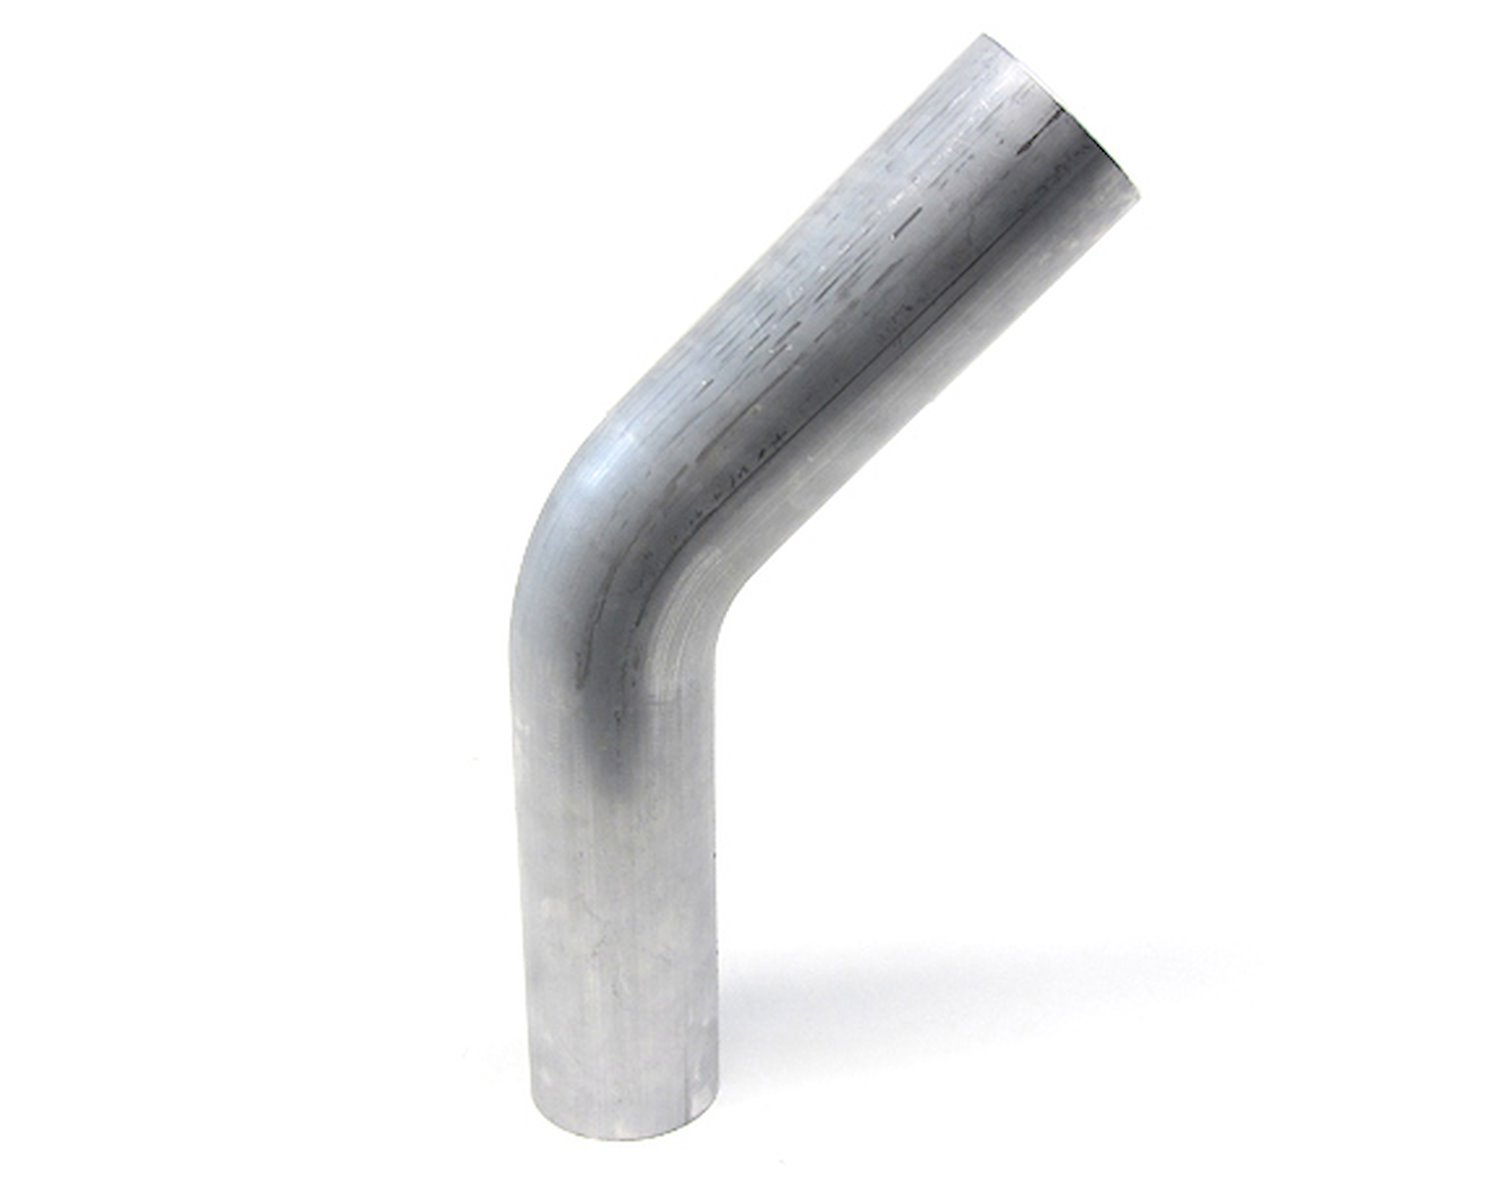 AT45-138-CLR-25 Aluminum Elbow Tube, 6061 Aluminum, 45-Degree Bend Elbow Tubing, 1-3/8 in. OD, Tight Radius, 2-1/2 in. CLR